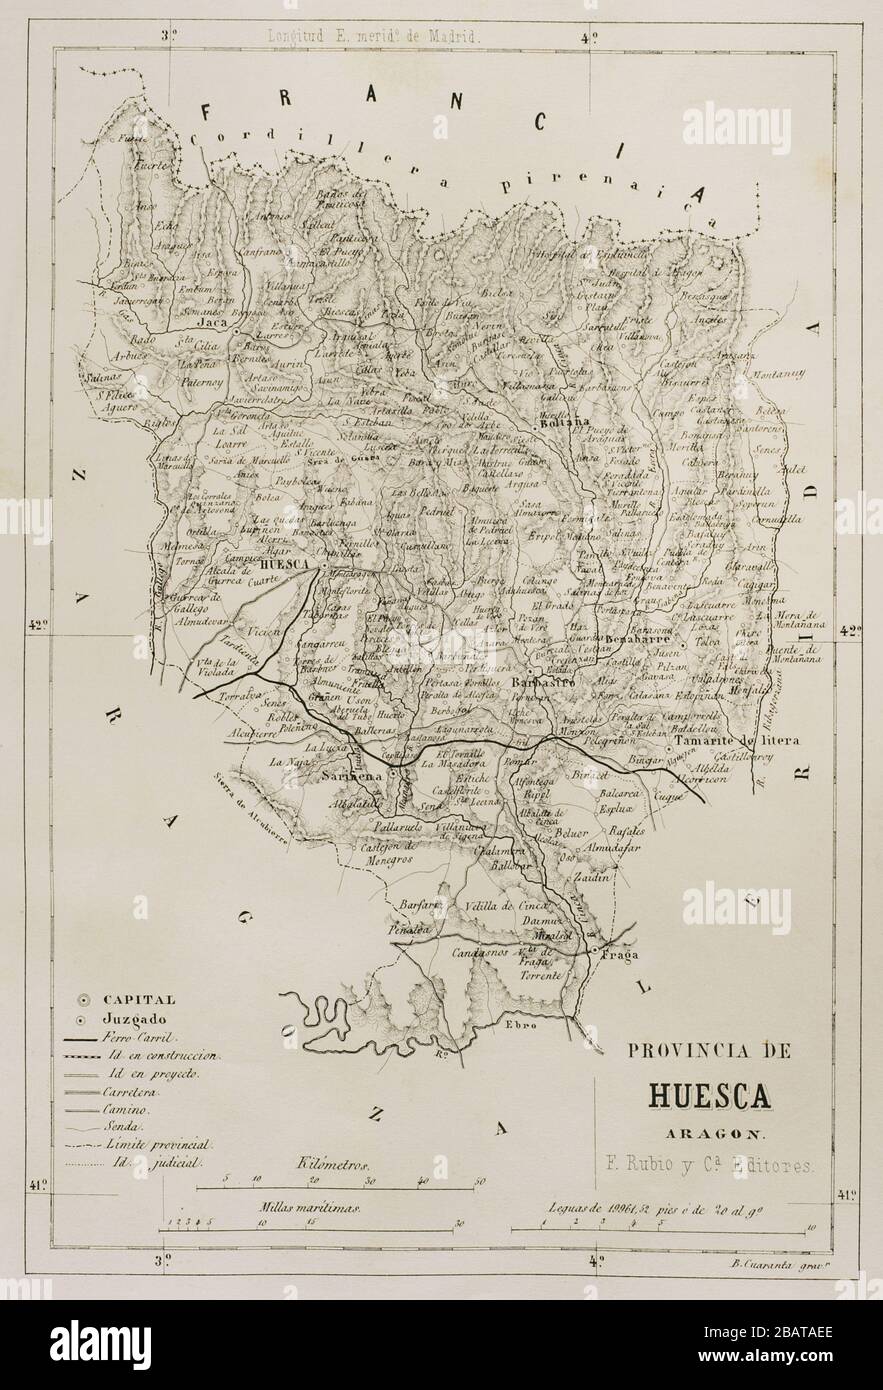 Map of the Province of Huesca, Aragon, Spain. Cronica General de España, Historia Ilustrada y Descriptiva de sus Provincias. Aragon, 1866. Stock Photo